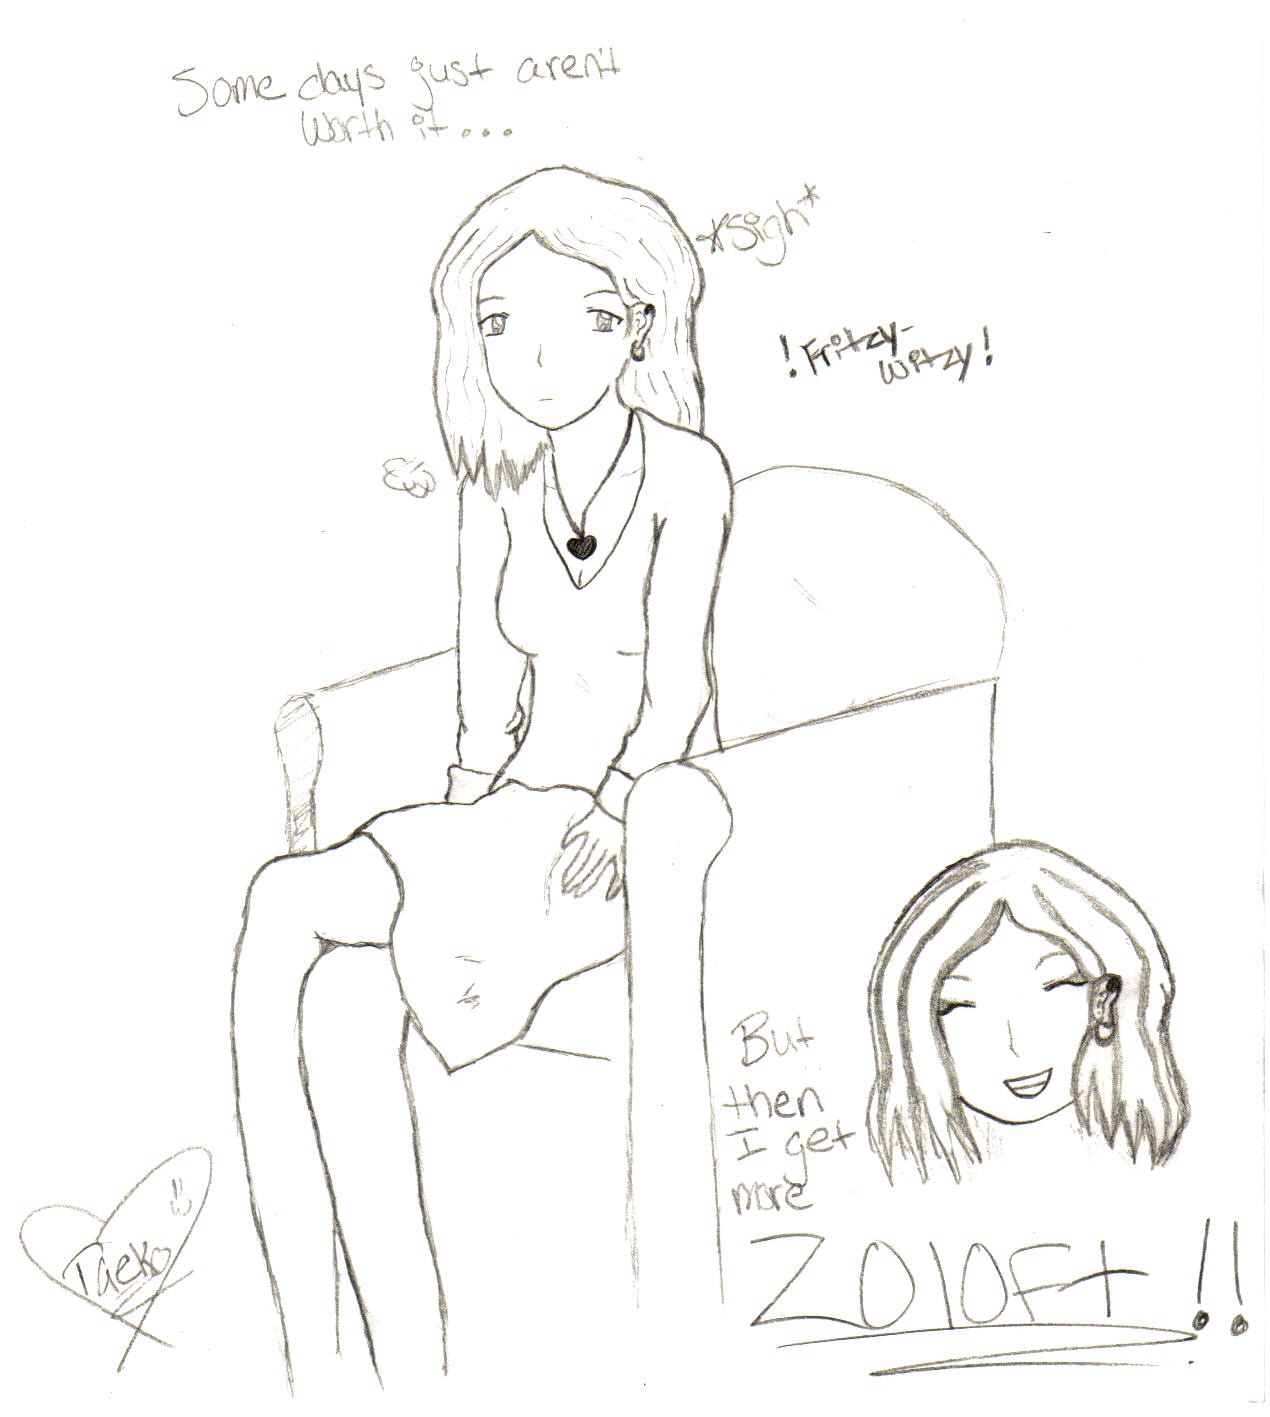 Fritzy Witzy Needs More Zoloft! by Taeko